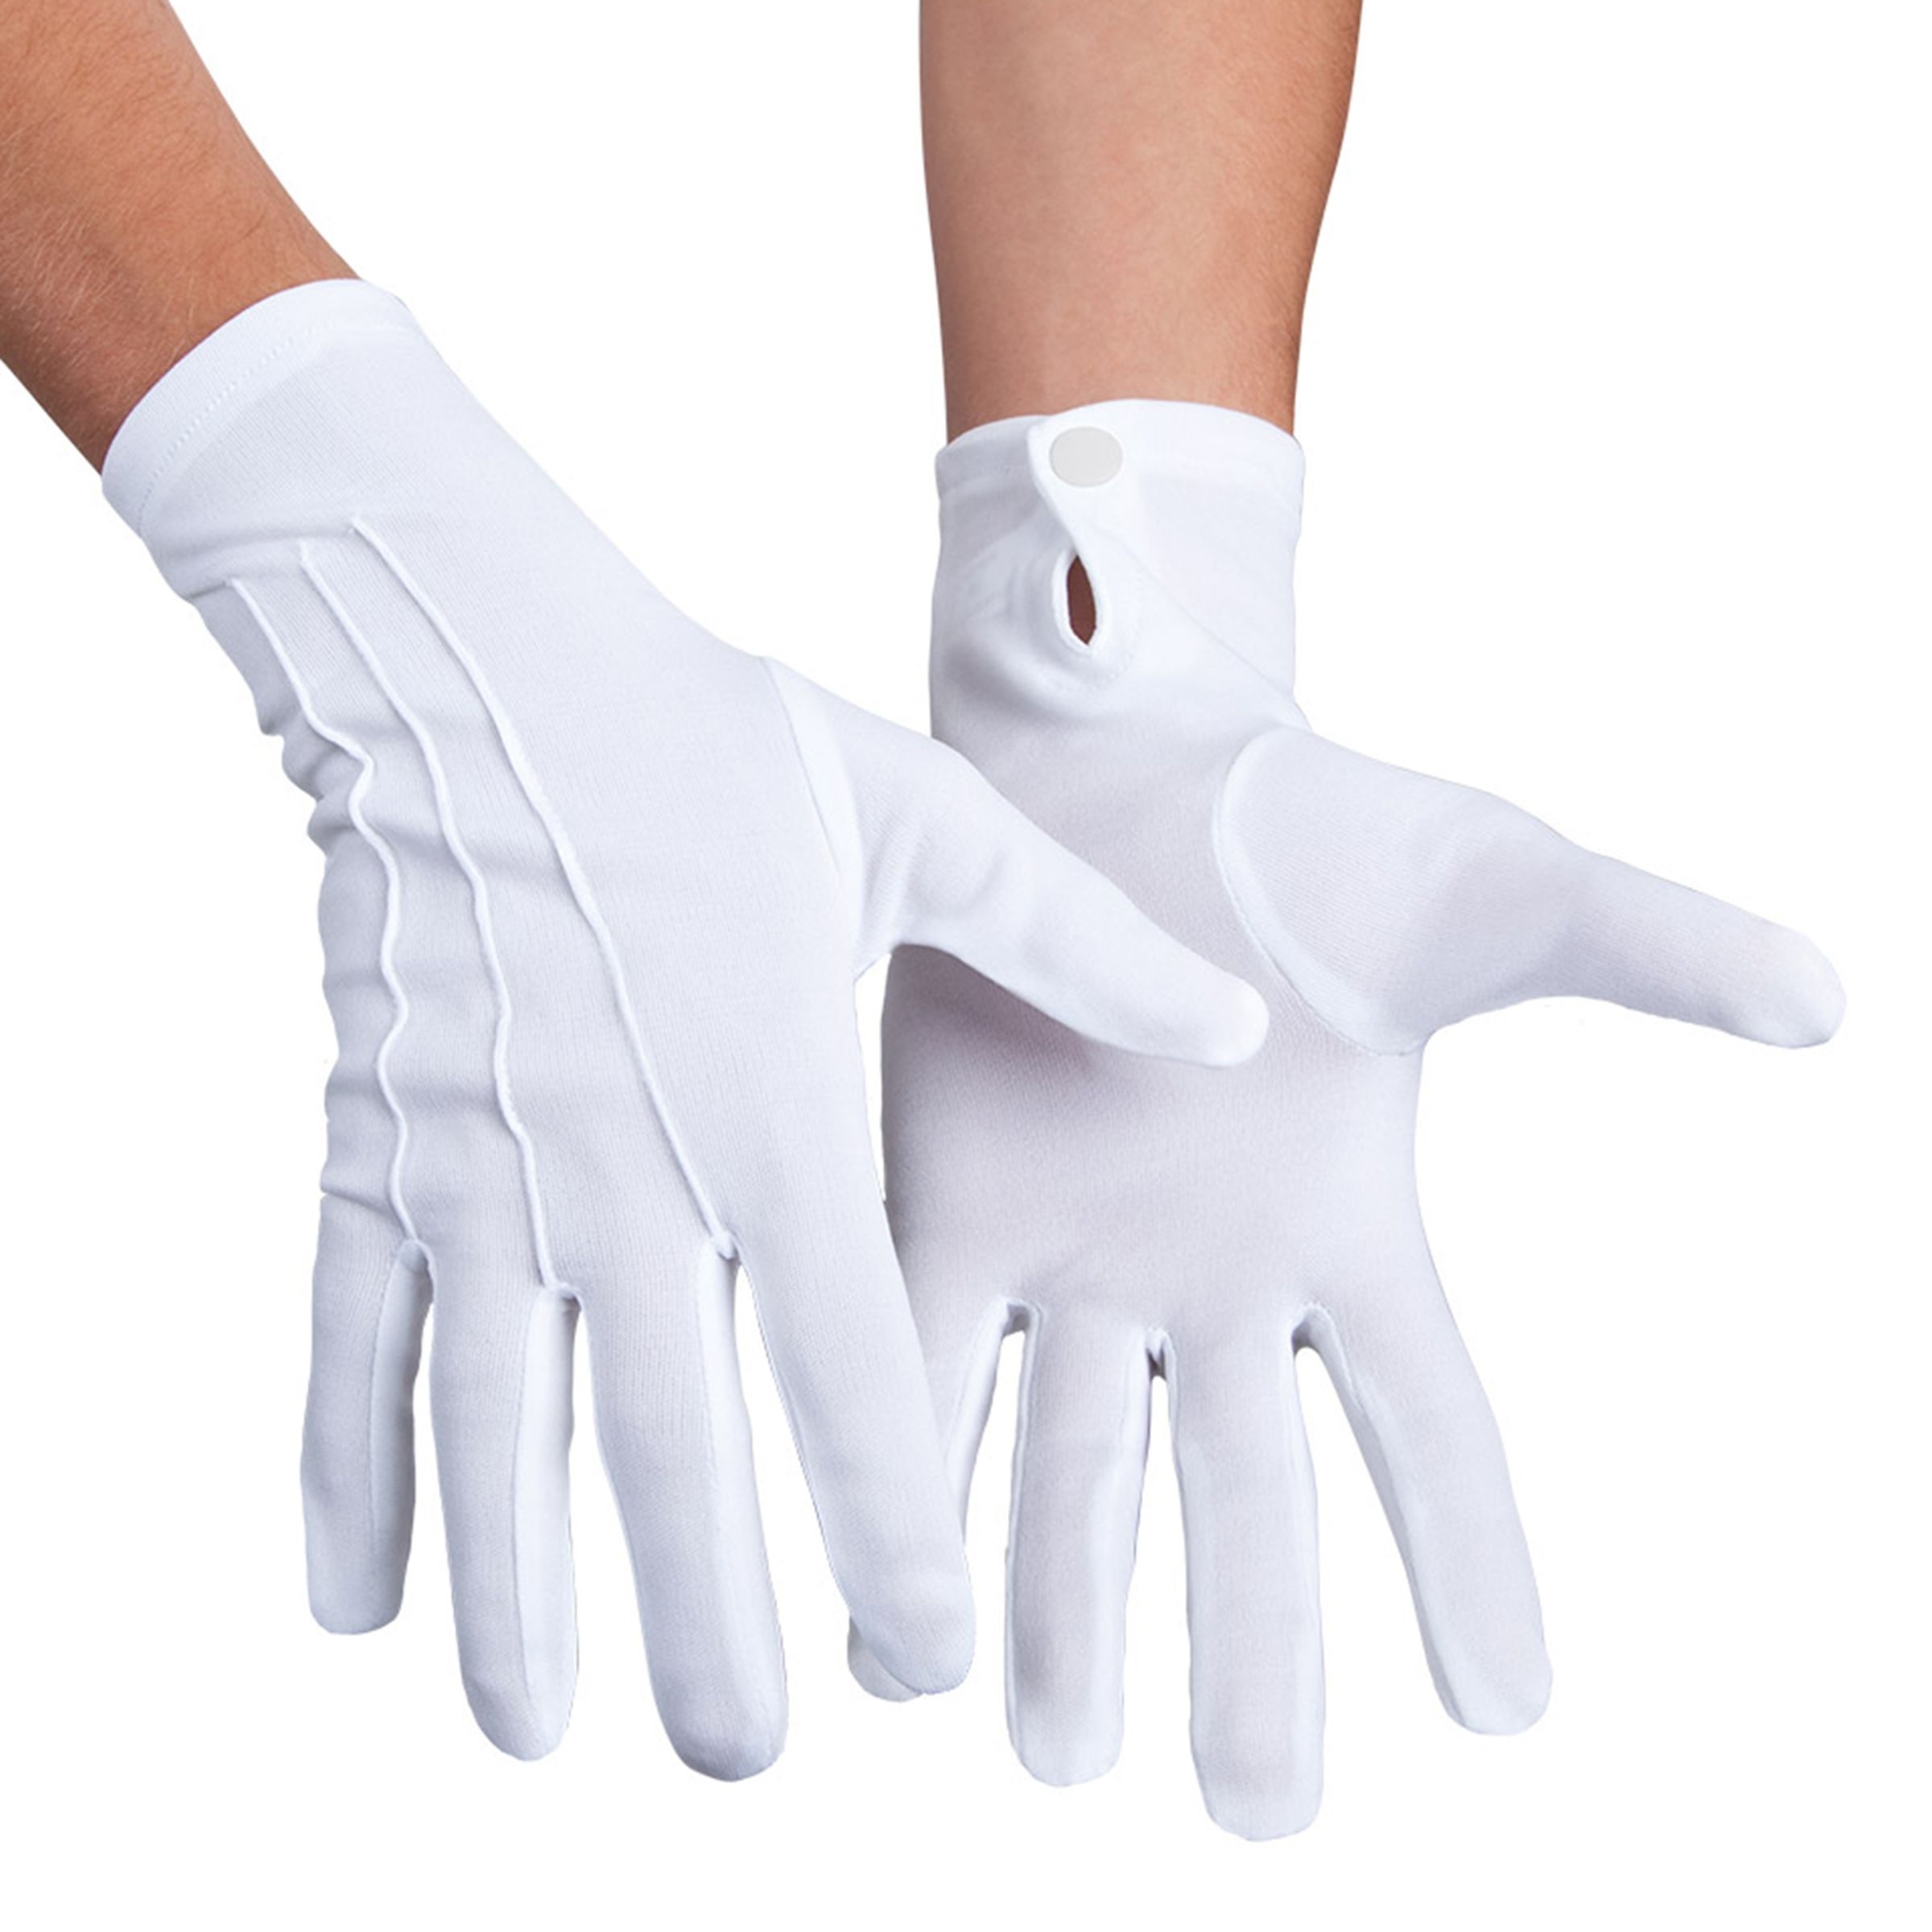 Handskar med Knapp Vita - One size